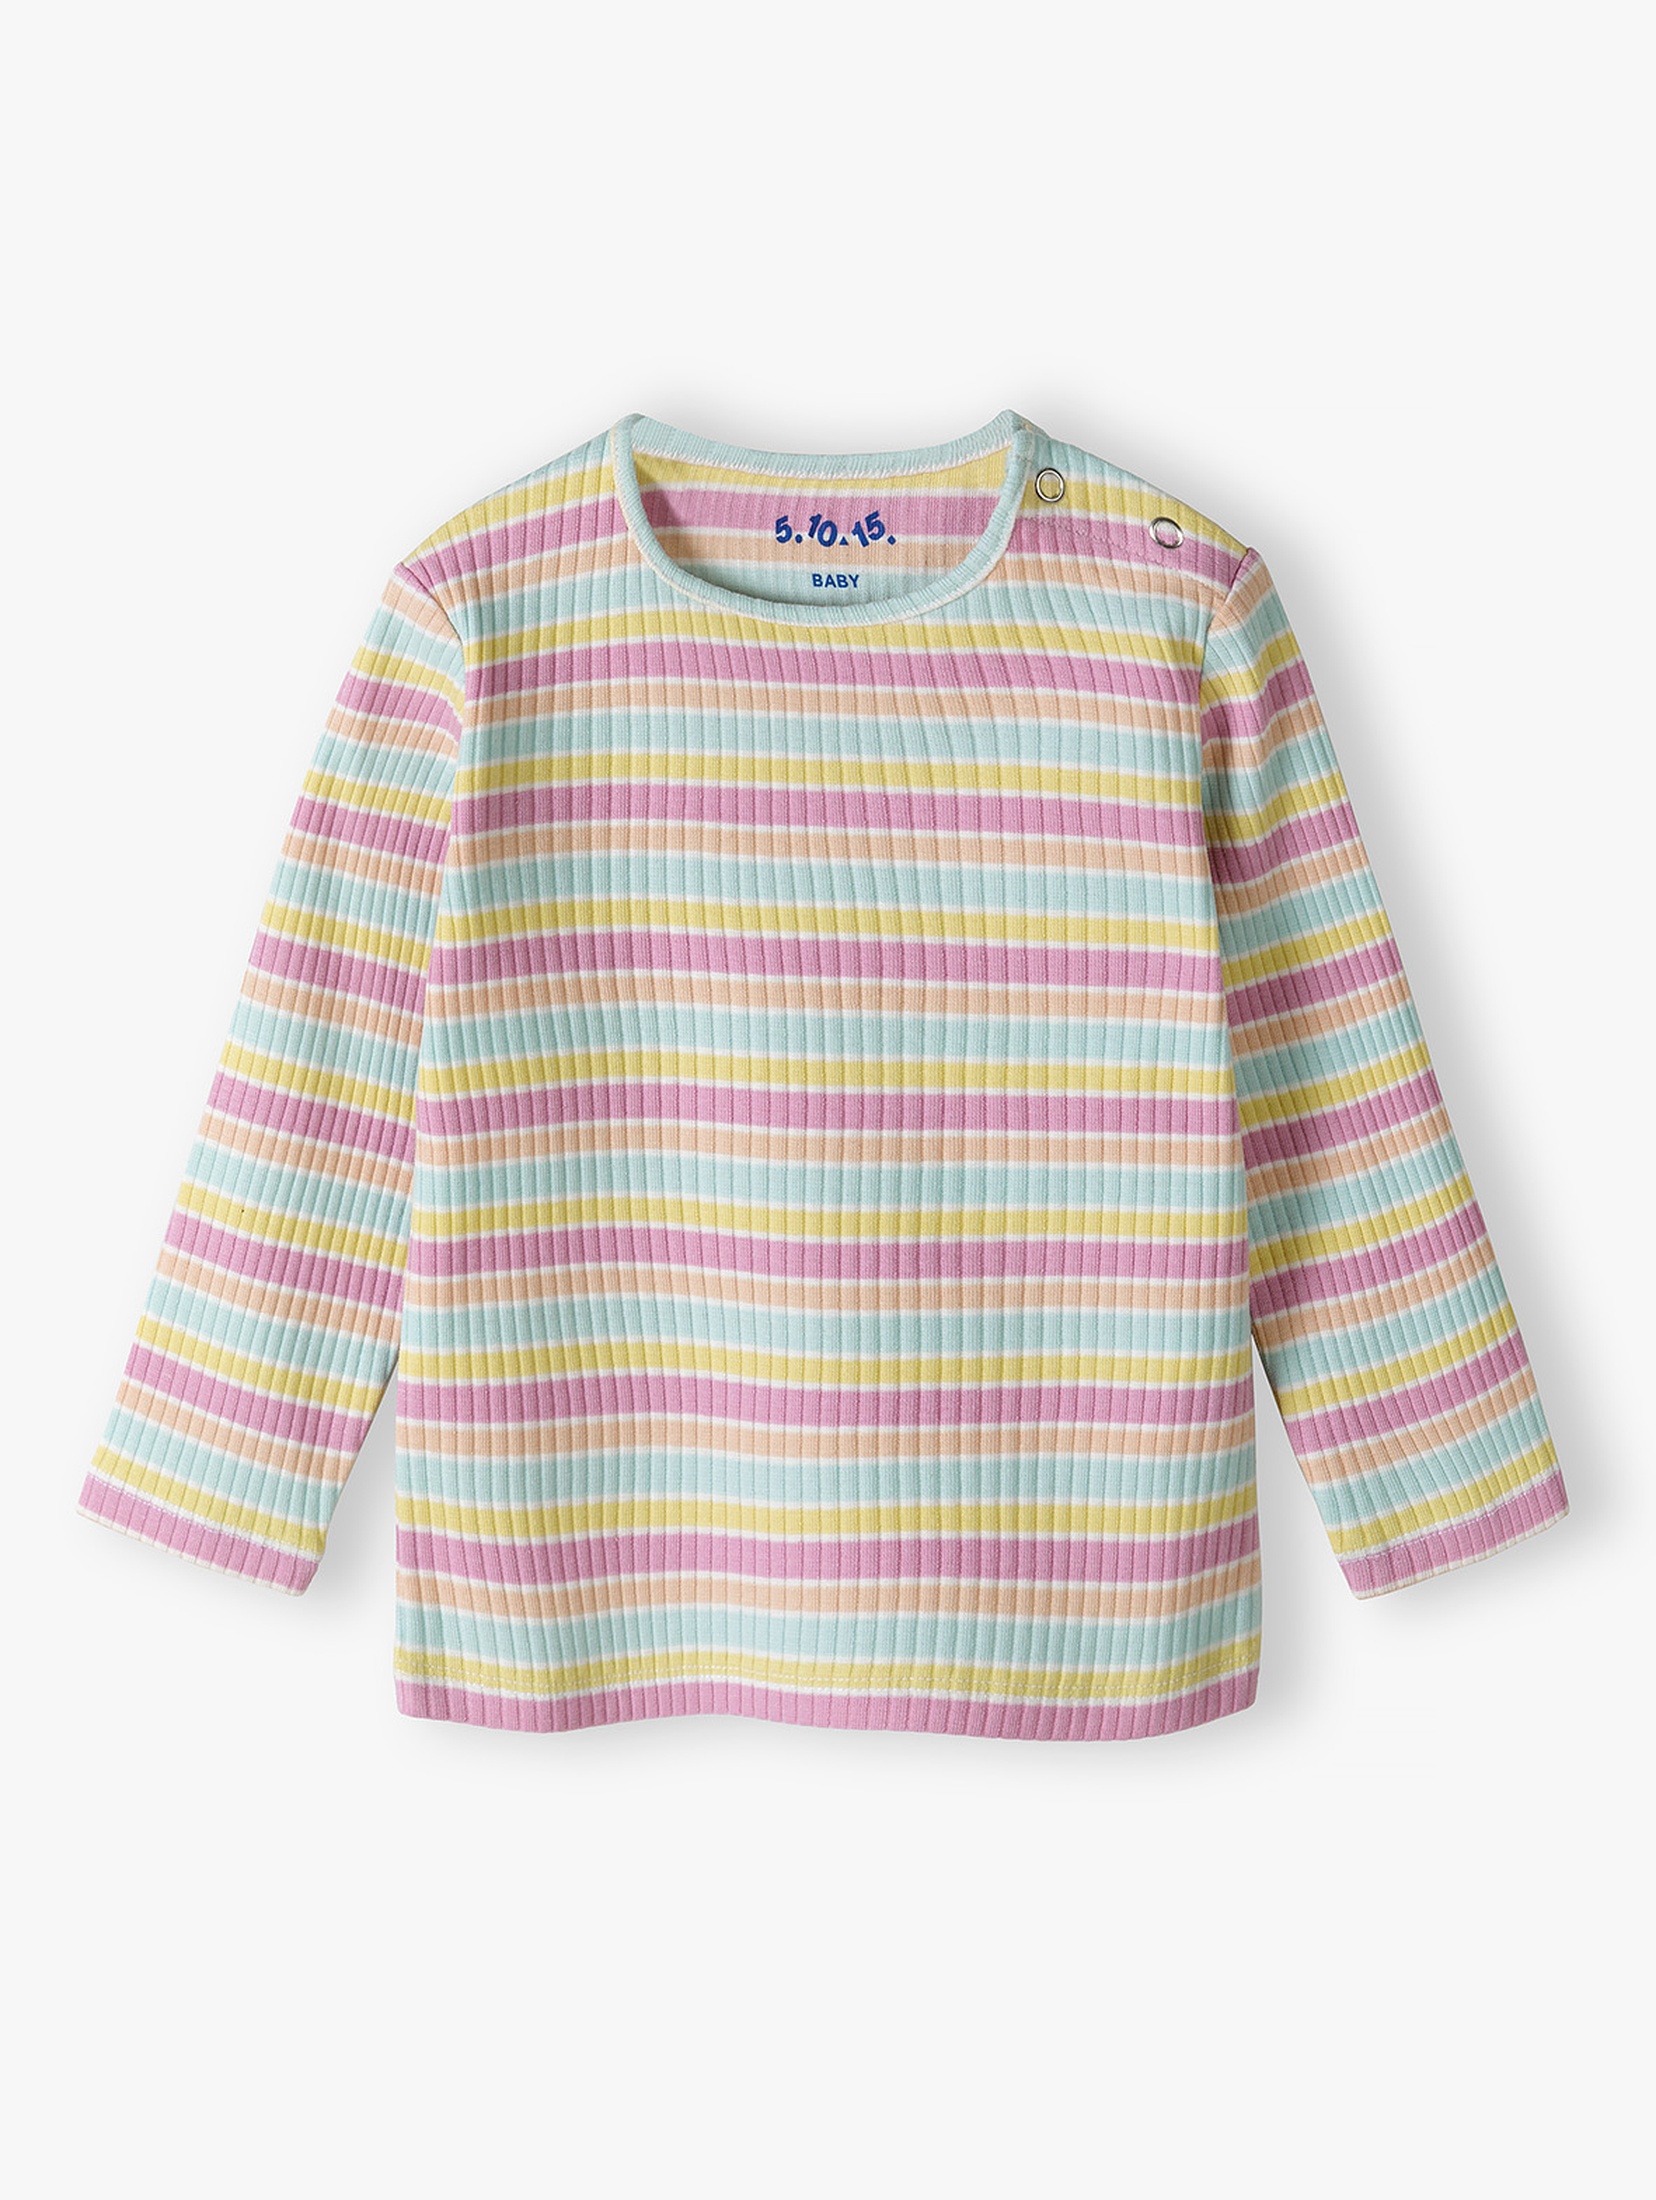 Kolorowa bluzka niemowlęca z długim rękawem - 5.10.15.